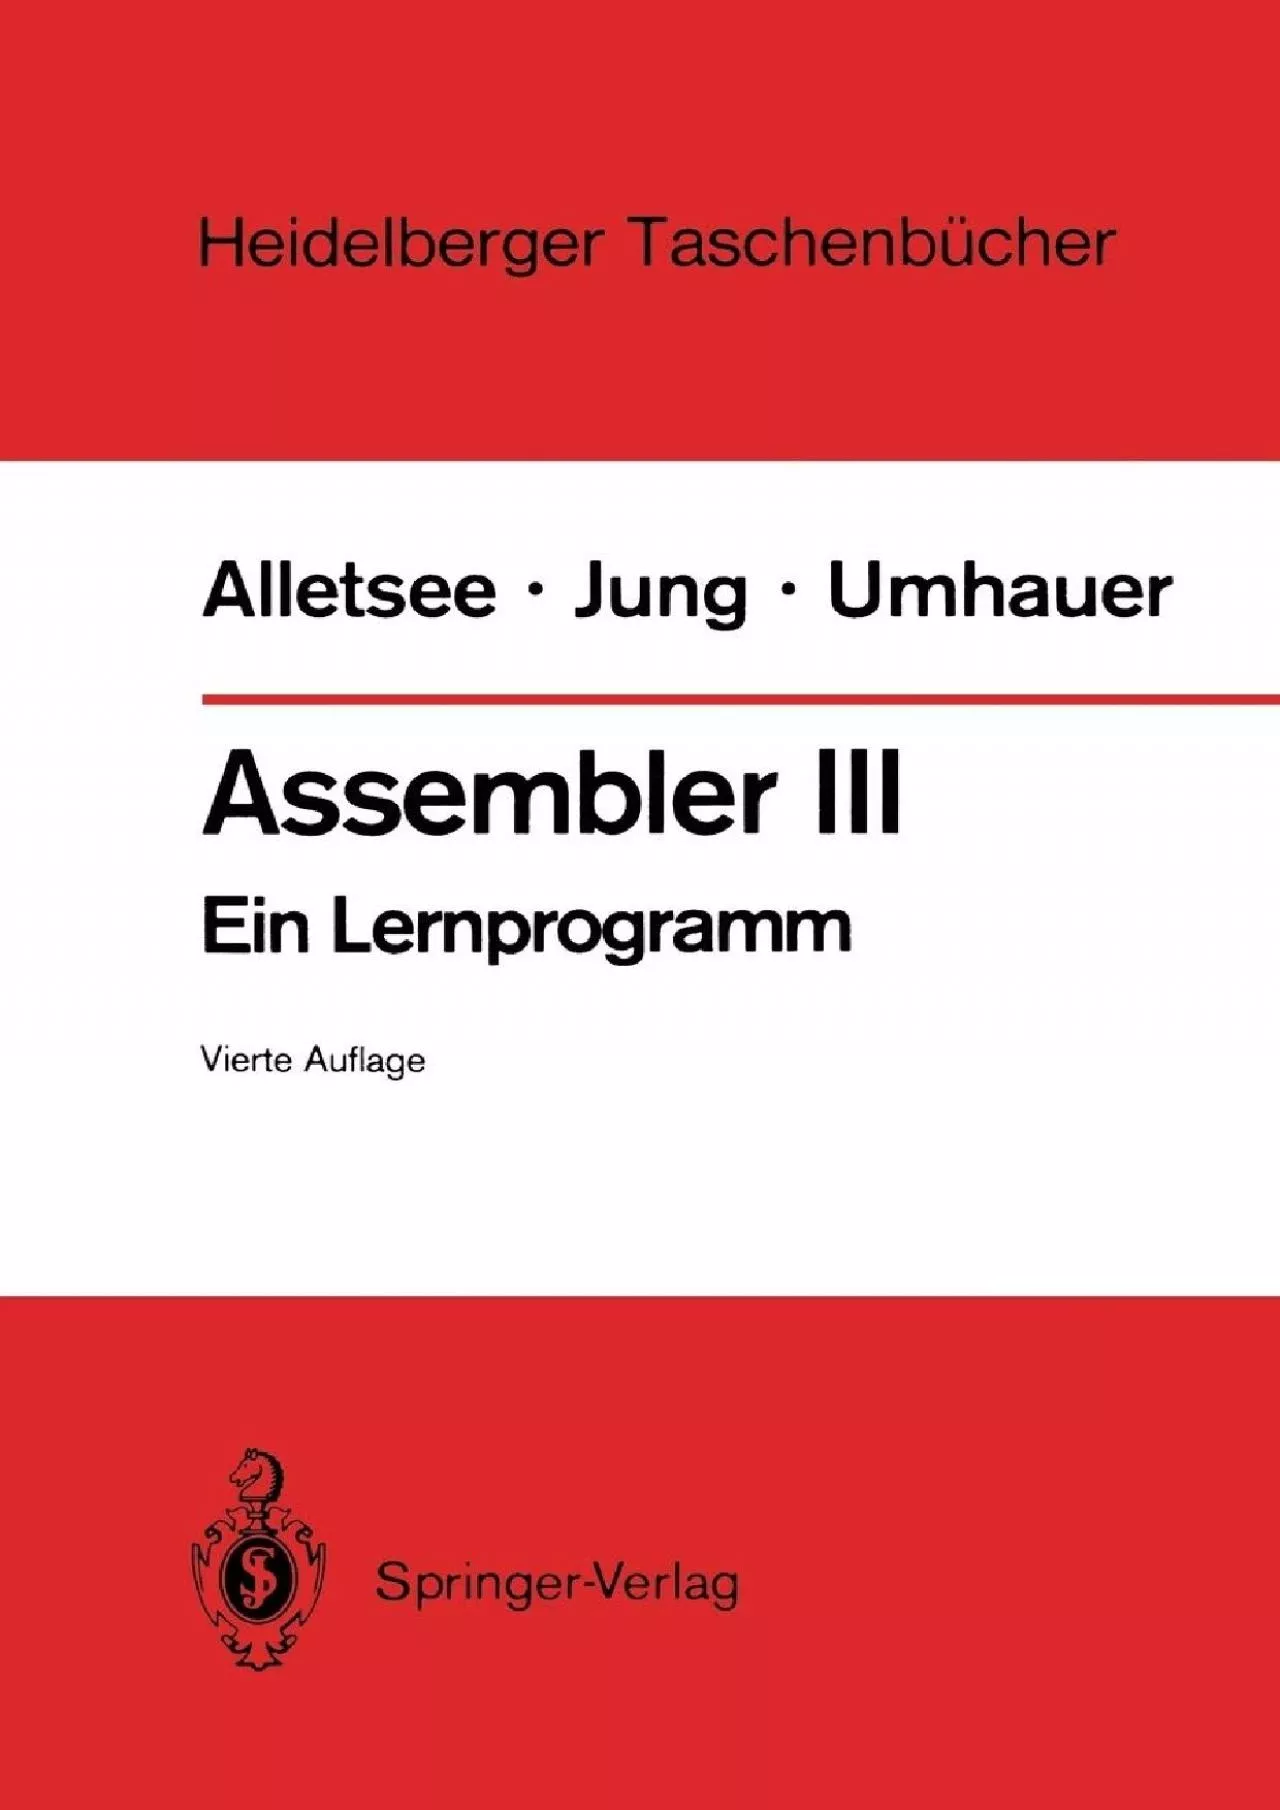 [READING BOOK]-Assembler III: Ein Lernprogramm (Heidelberger Taschenbücher, 142) (German